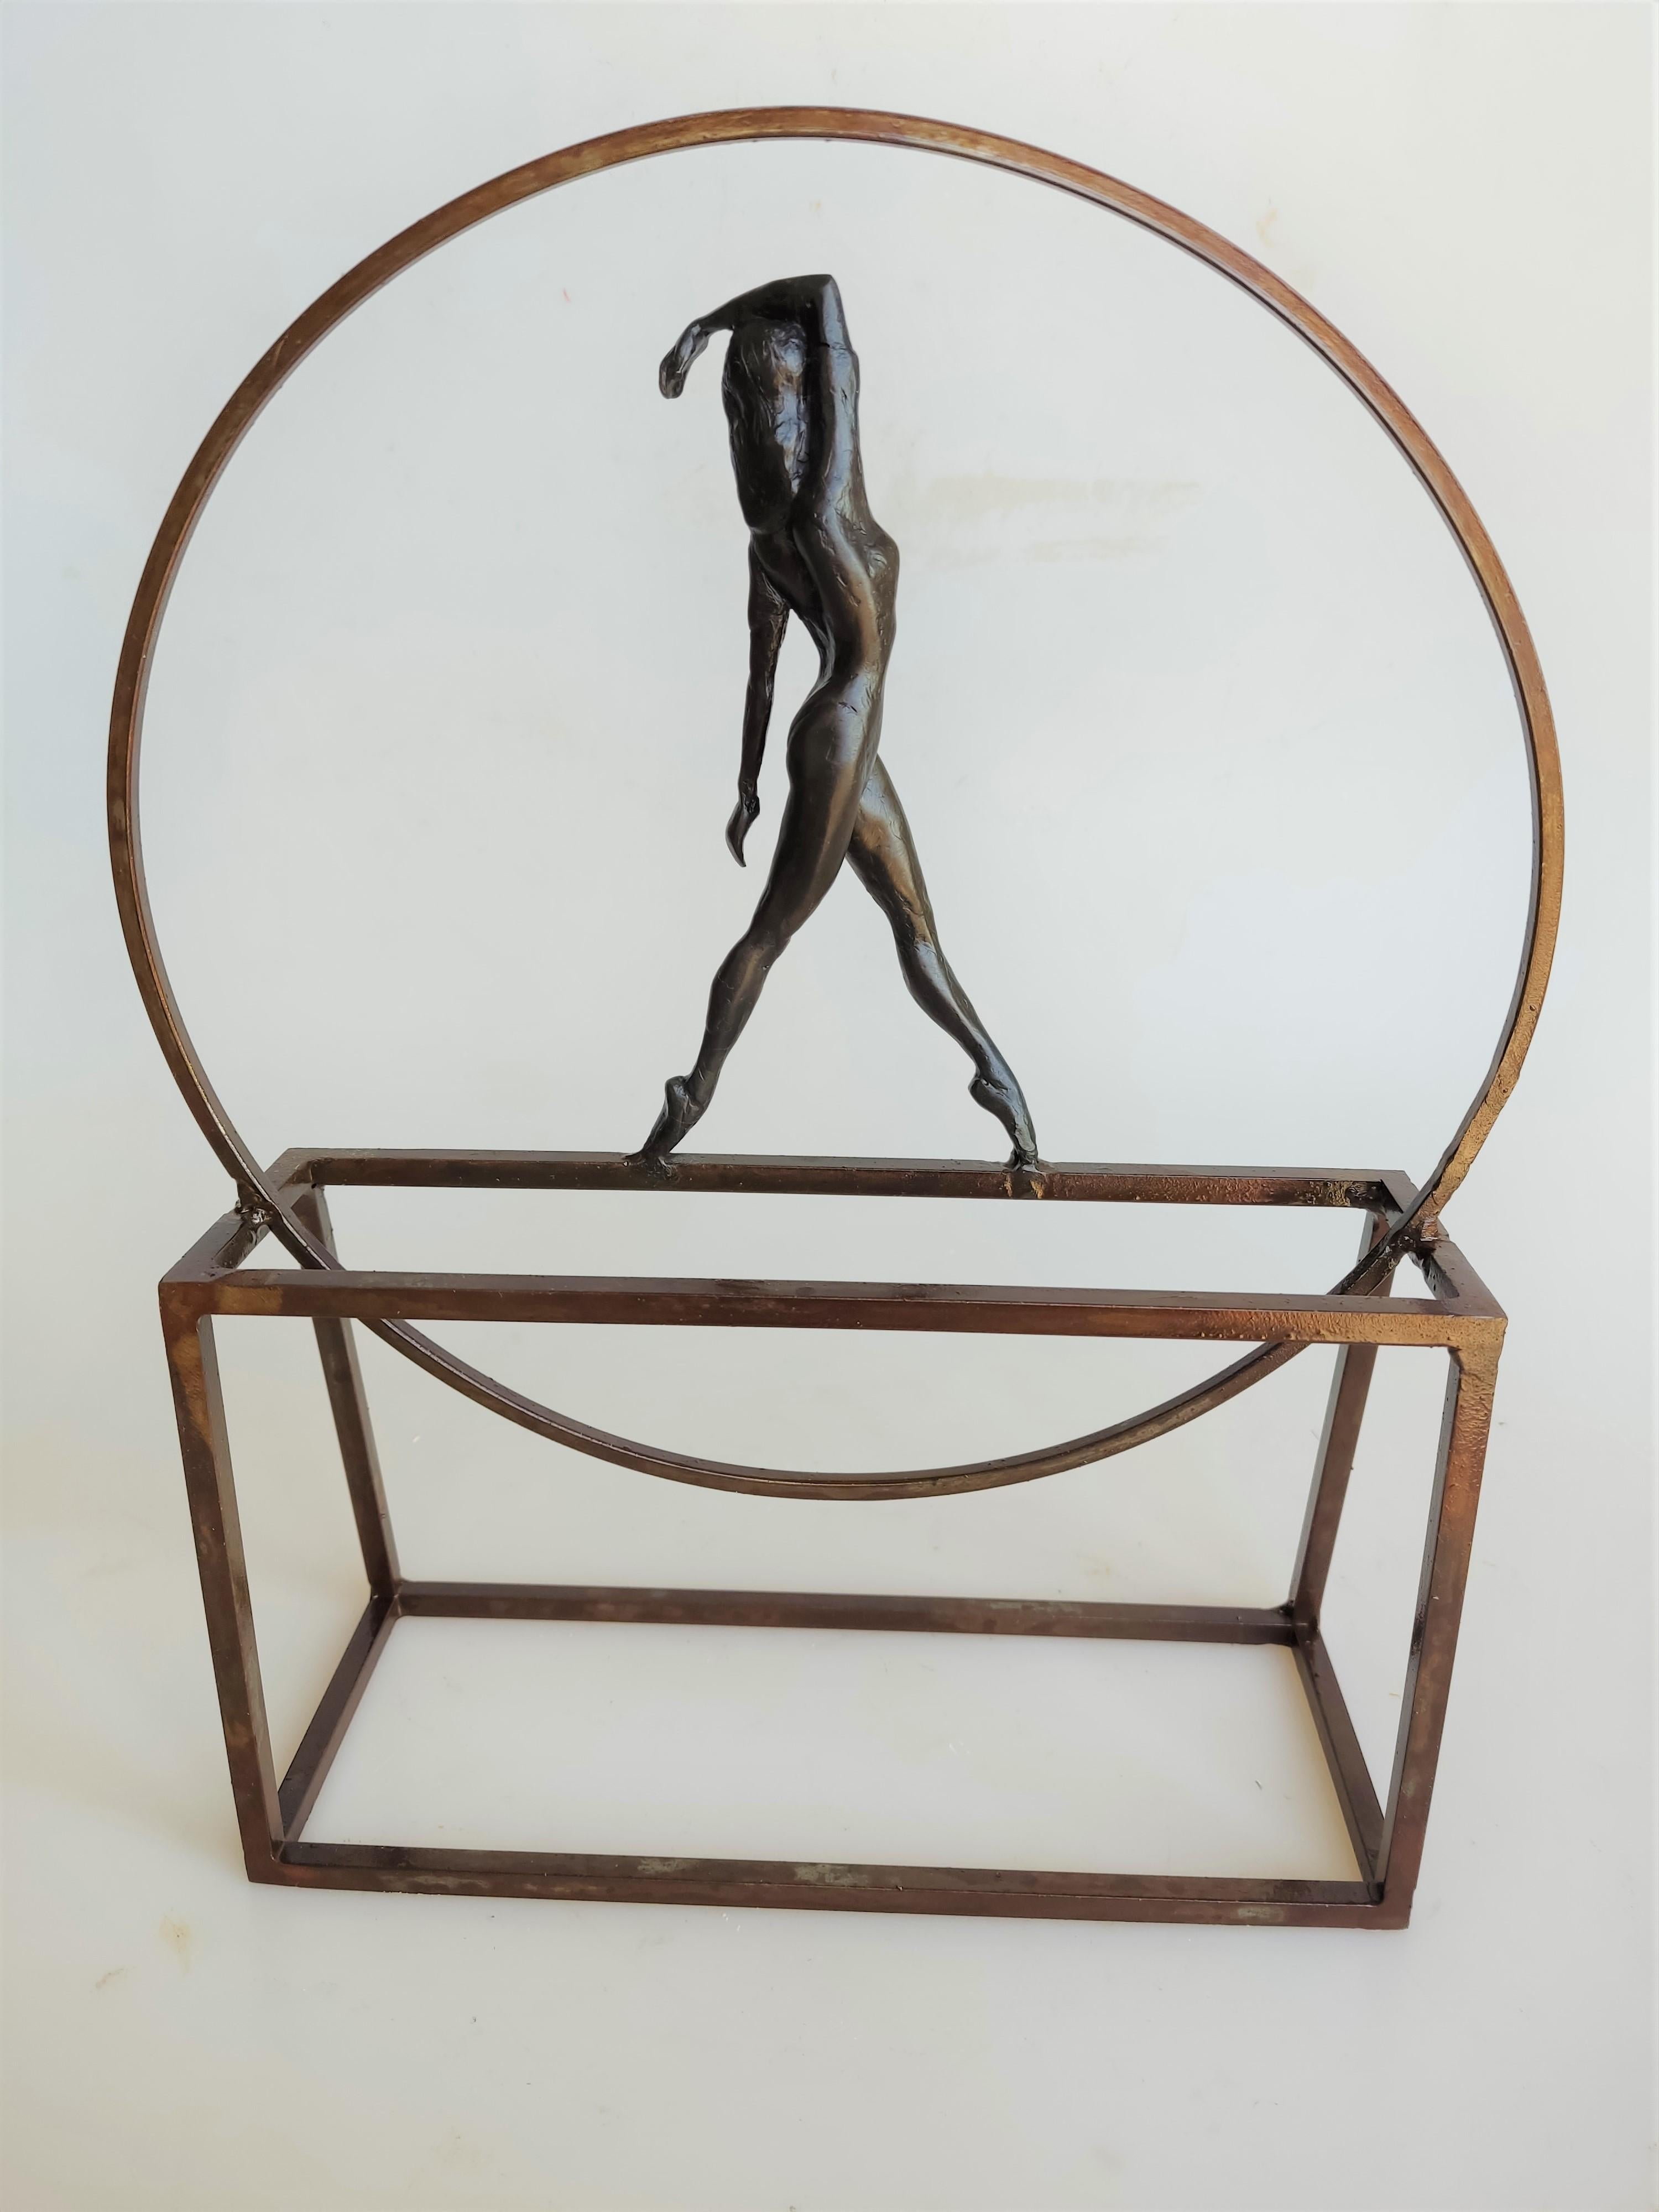 Sensitivity ist eine Bronzeskulptur, die mit einem Stahlsockel verbunden ist. Die Auflage beträgt 25 Stück. Diese Skulptur kann sowohl auf einem Regal stehen als auch an die Wand gehängt werden. Es fängt die Haltung eines Balletttänzers ein, der